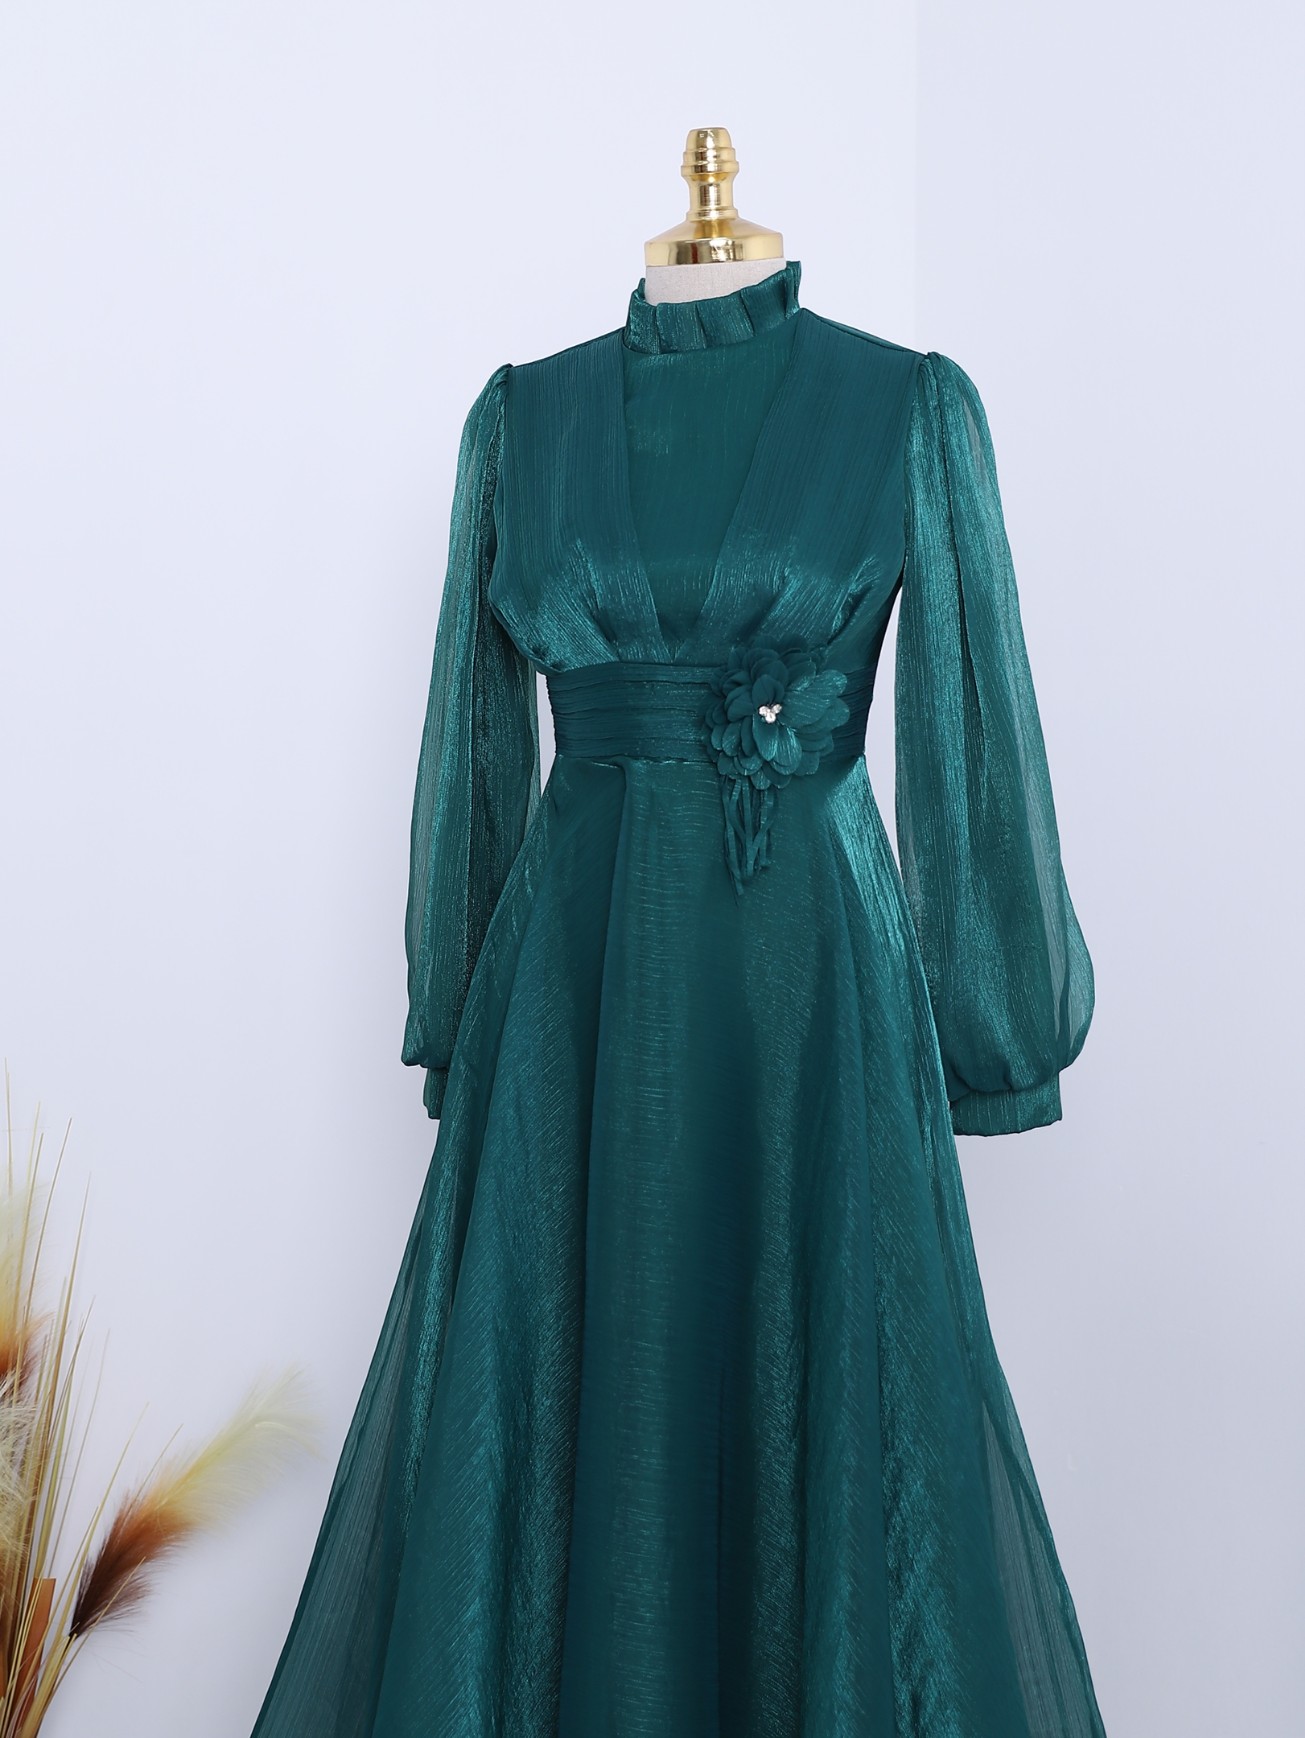 İtalyan İpek Dantel Detay Elbise-Zümrüt Yeşili